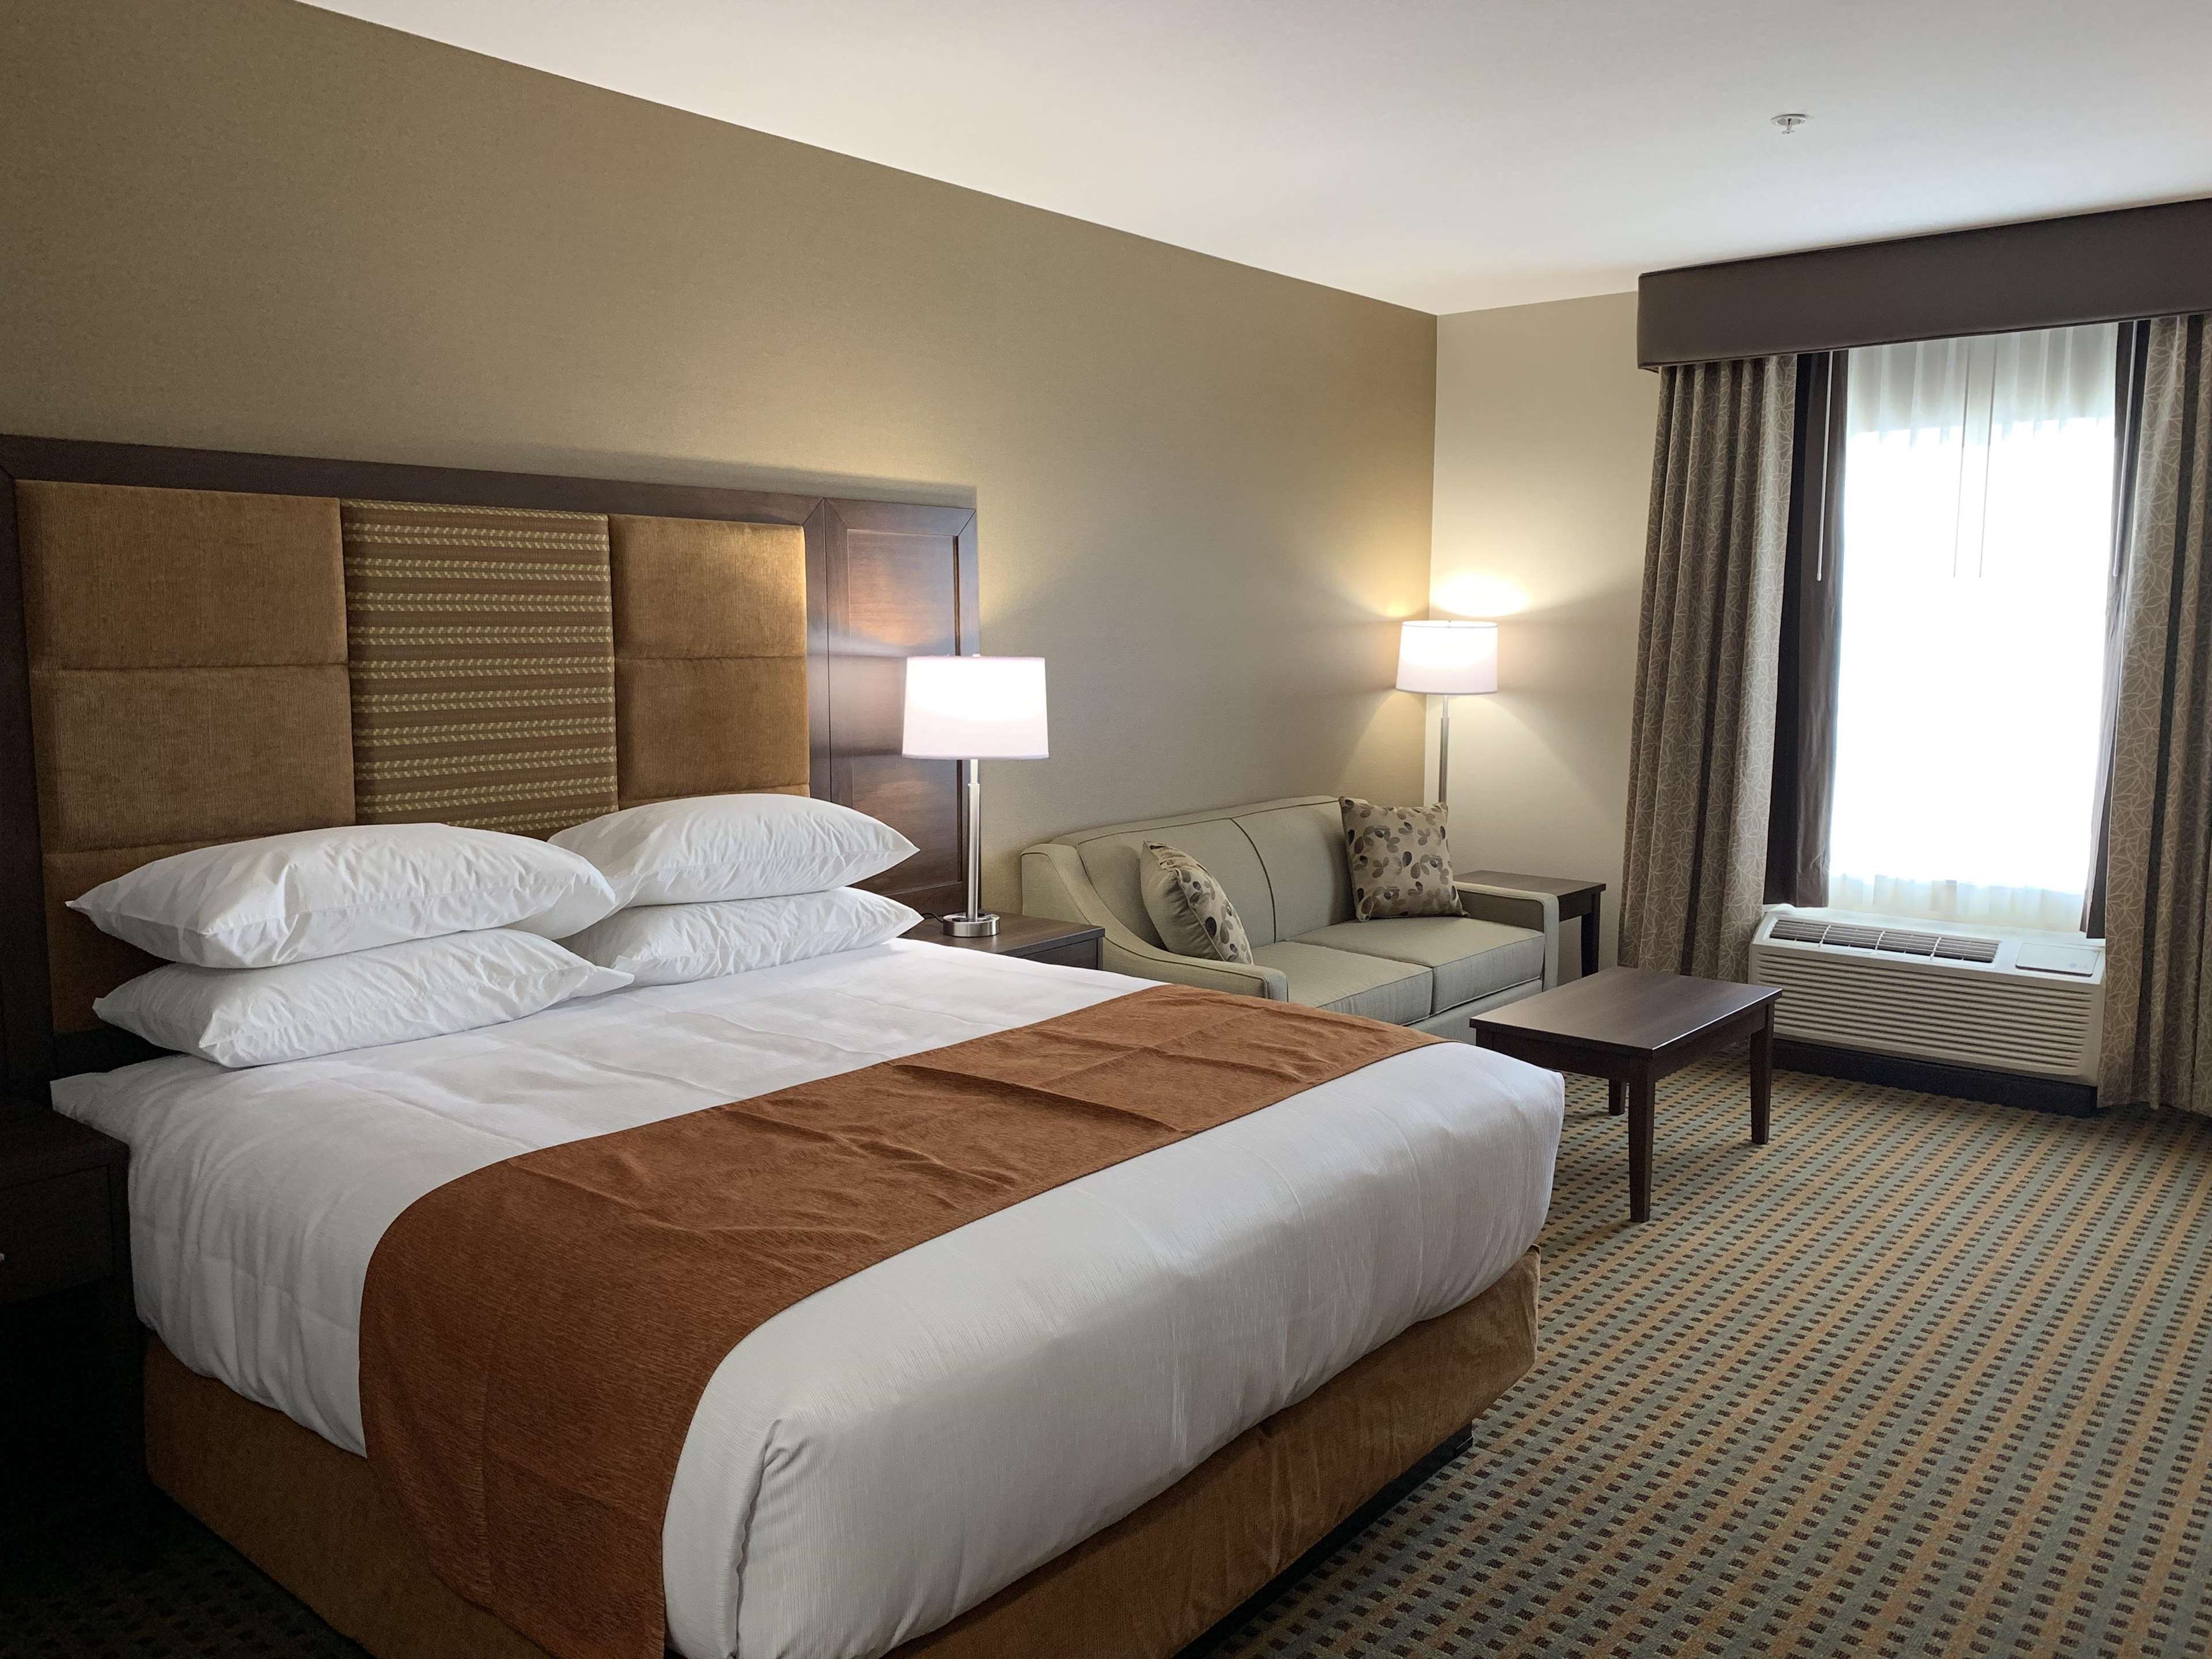 Standard King Guest Room Best Western Plus Hinton Inn & Suites Hinton (780)817-7000